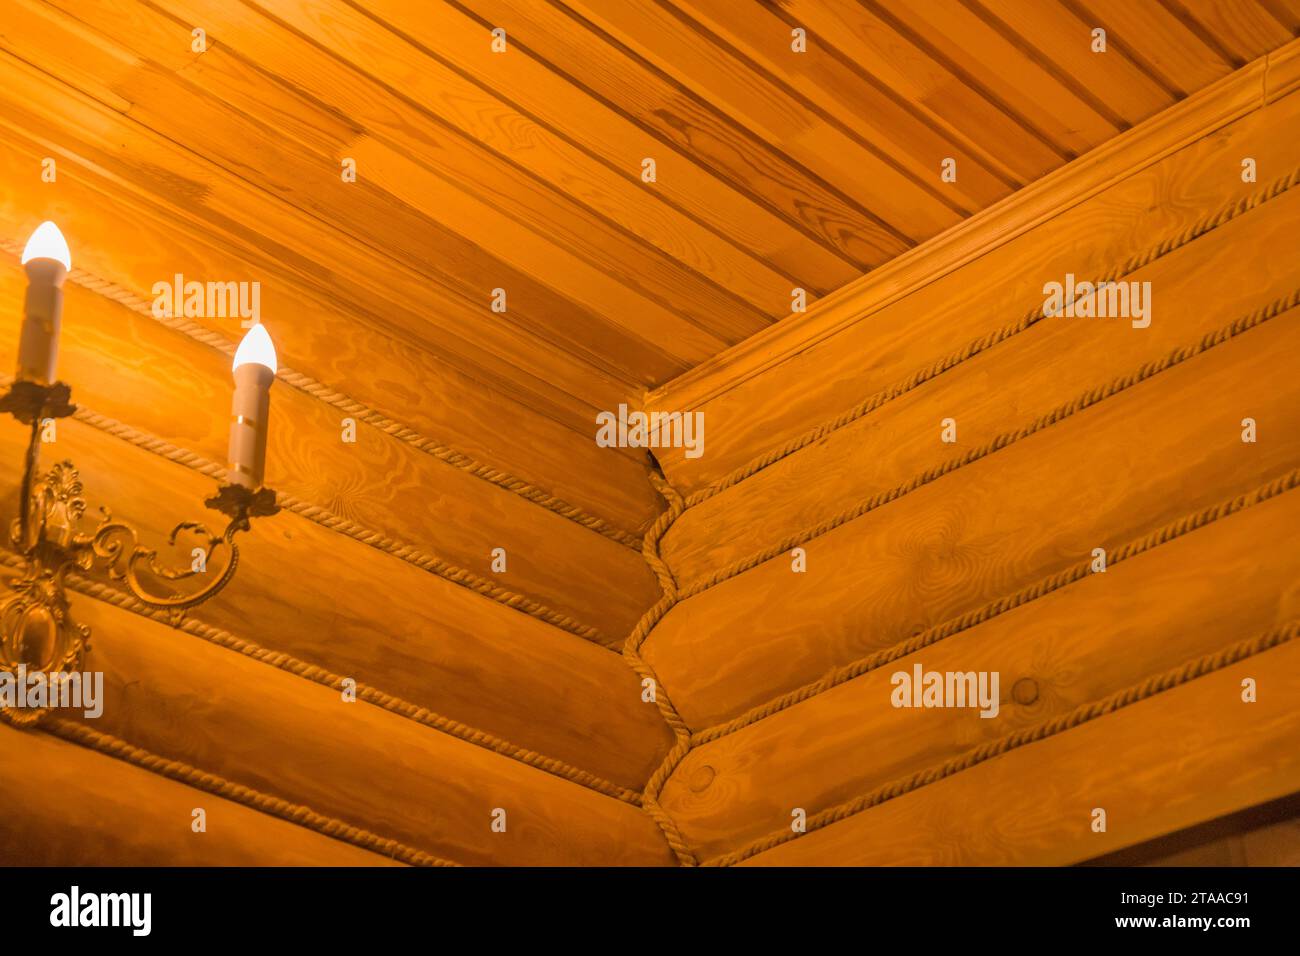 Winkelgelenk Holz Orange Logs Deckenobjektdetails Linie Und Streifen Diagonalteil Innendekoration Design Brennende Kerzen. Stockfoto